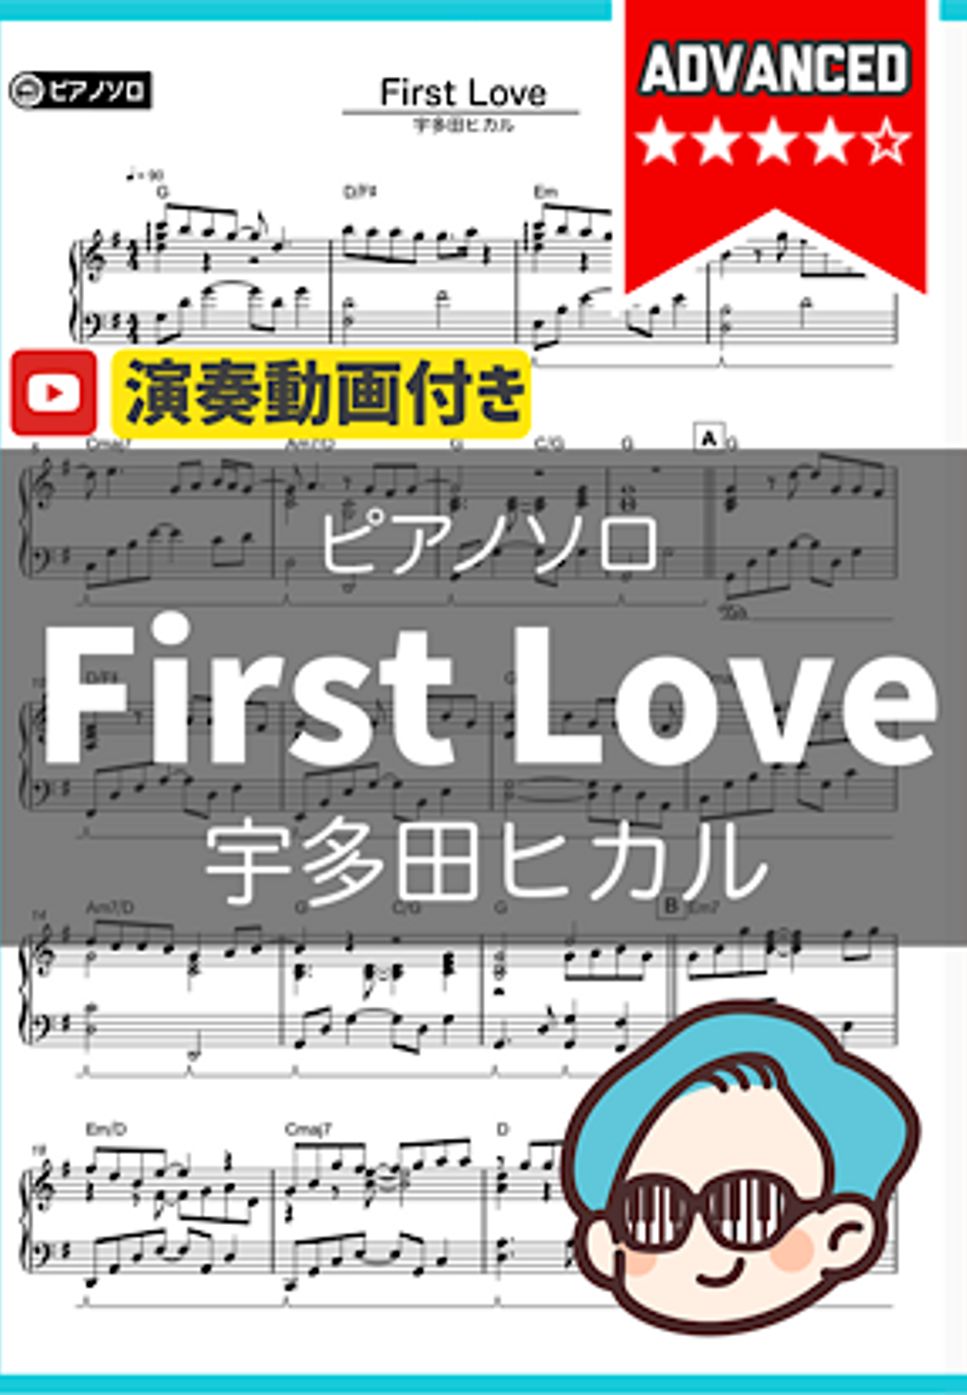 宇多田ヒカル - First Love by シータピアノ